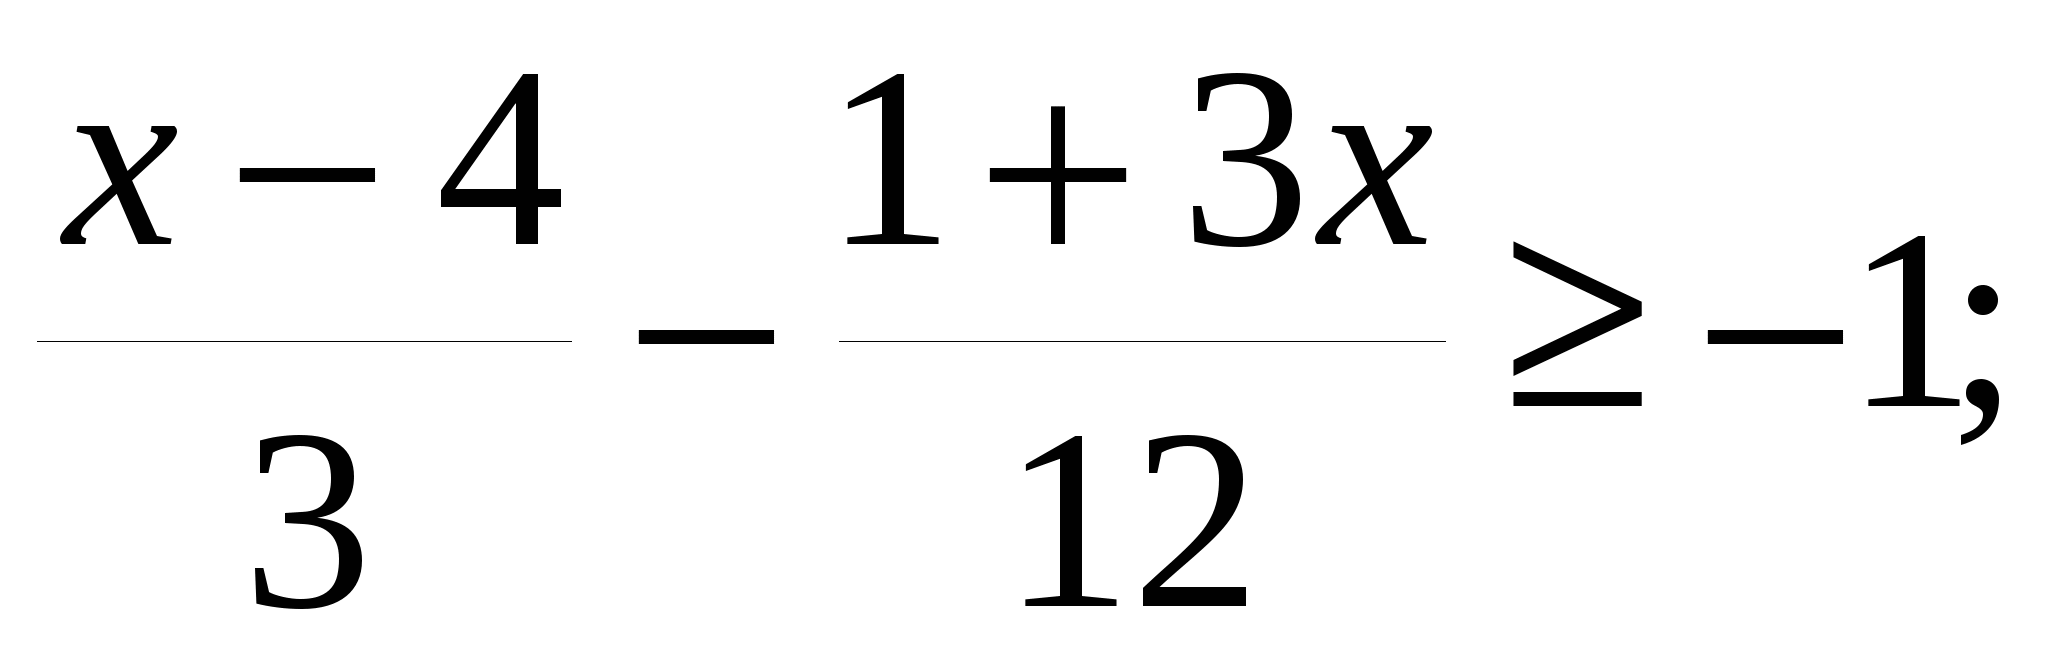 Практическое пособие по математике для 7-9 классов «Основные алгоритмы алгебры»